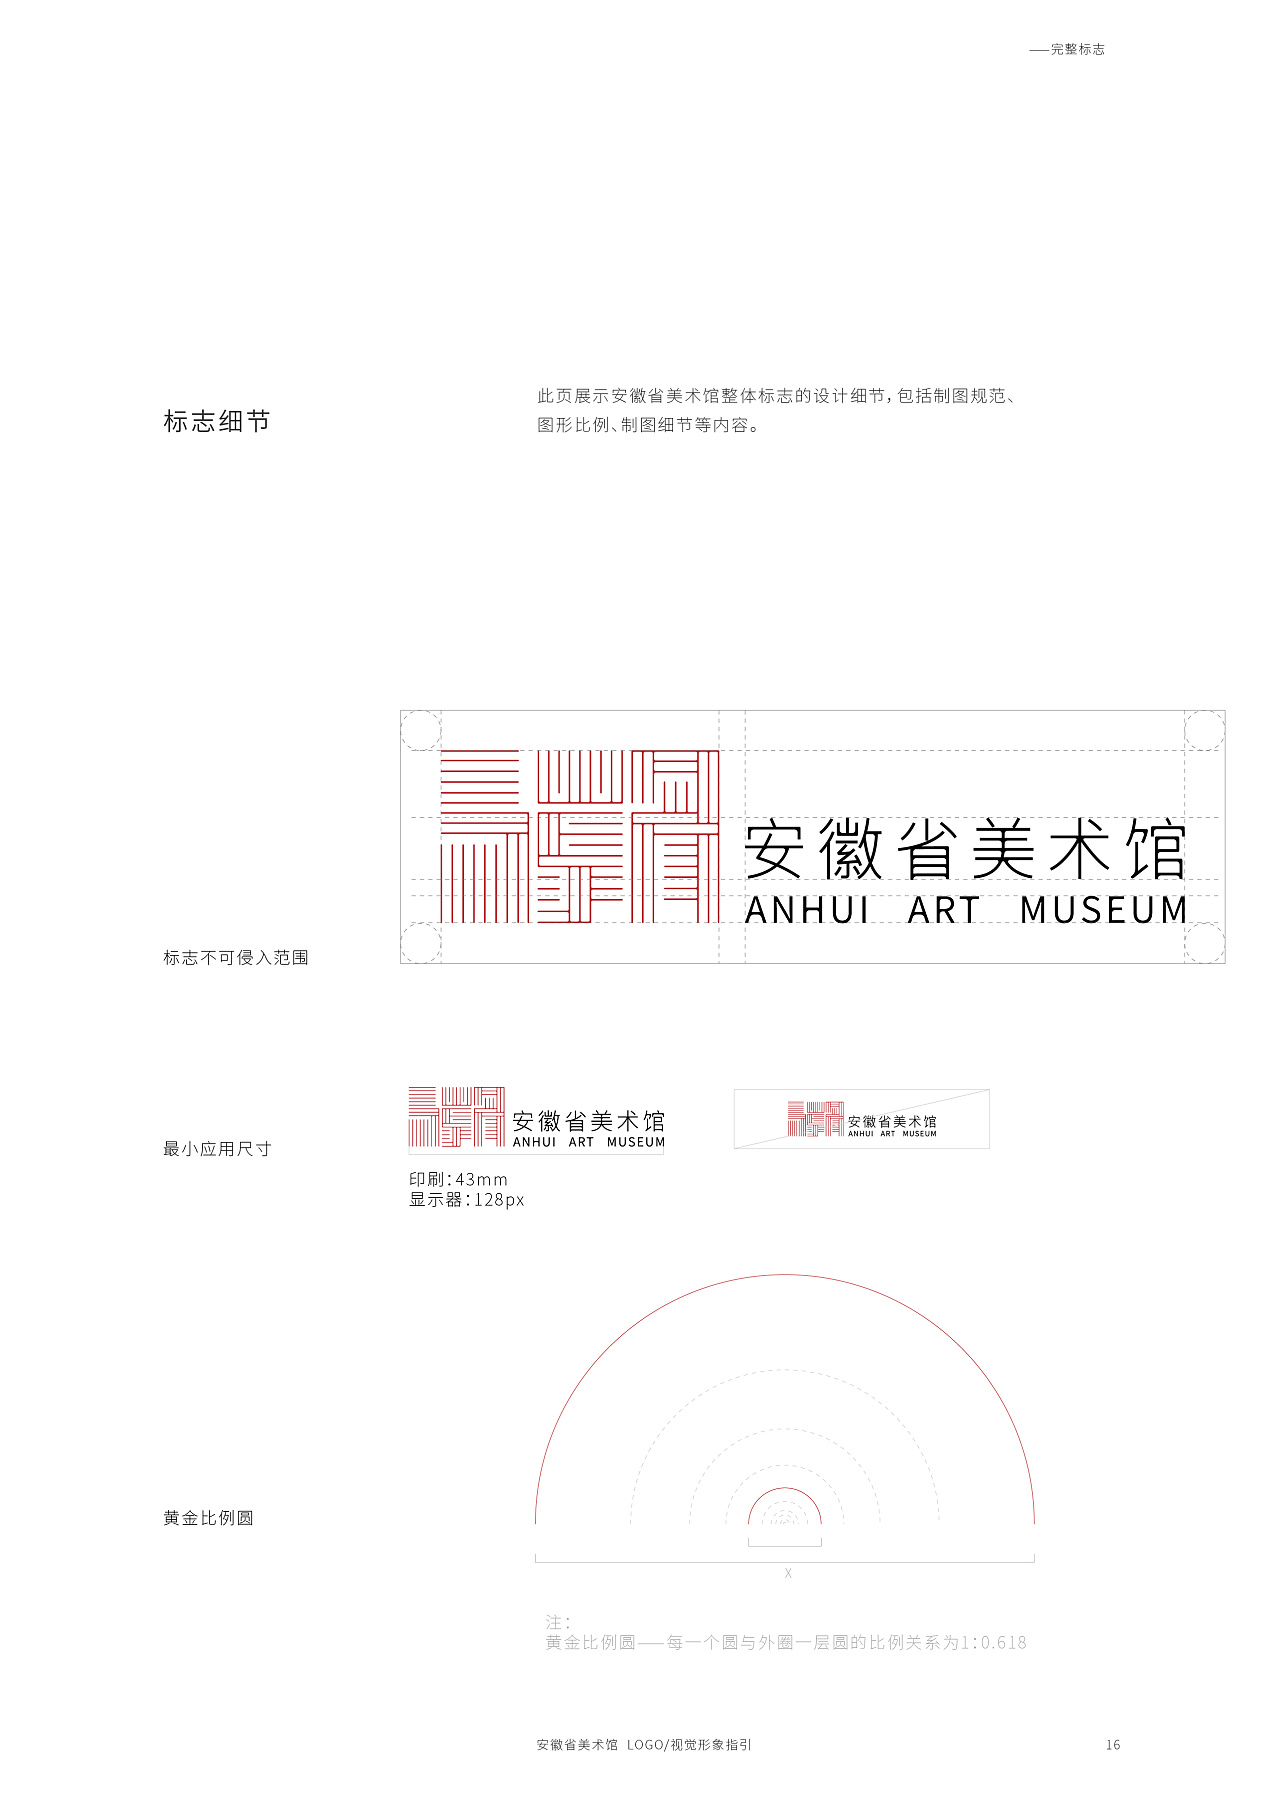 安徽省美术馆logo及vi设计